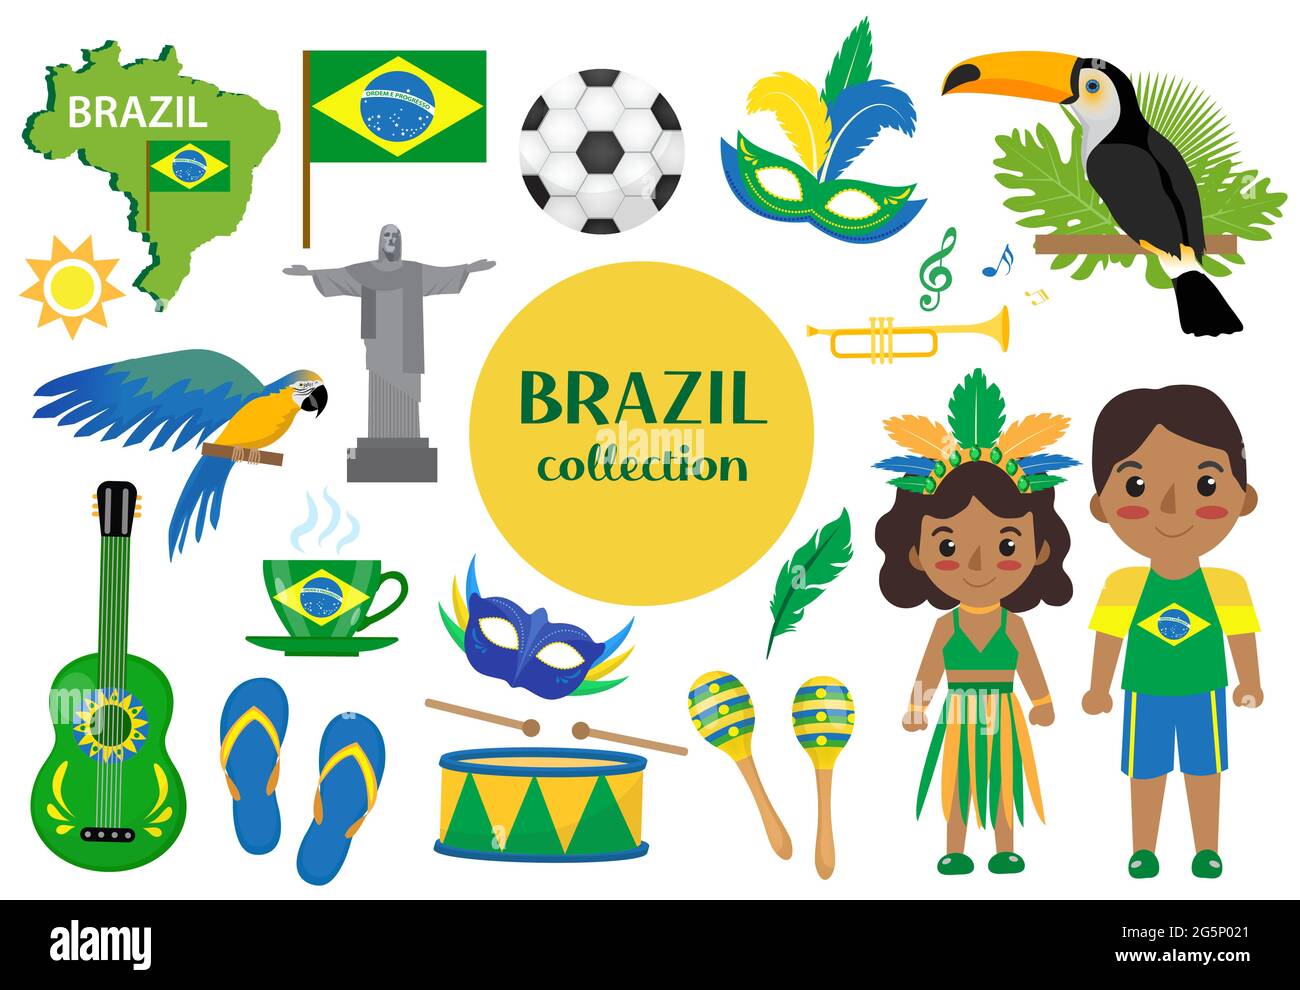 Ensemble de carnaval brésilien clip art Brésil pays voyage tourisme, symboles nationaux. Collection d'éléments de design, avec toucan, perroquet, rio de jeneiro Illustration de Vecteur